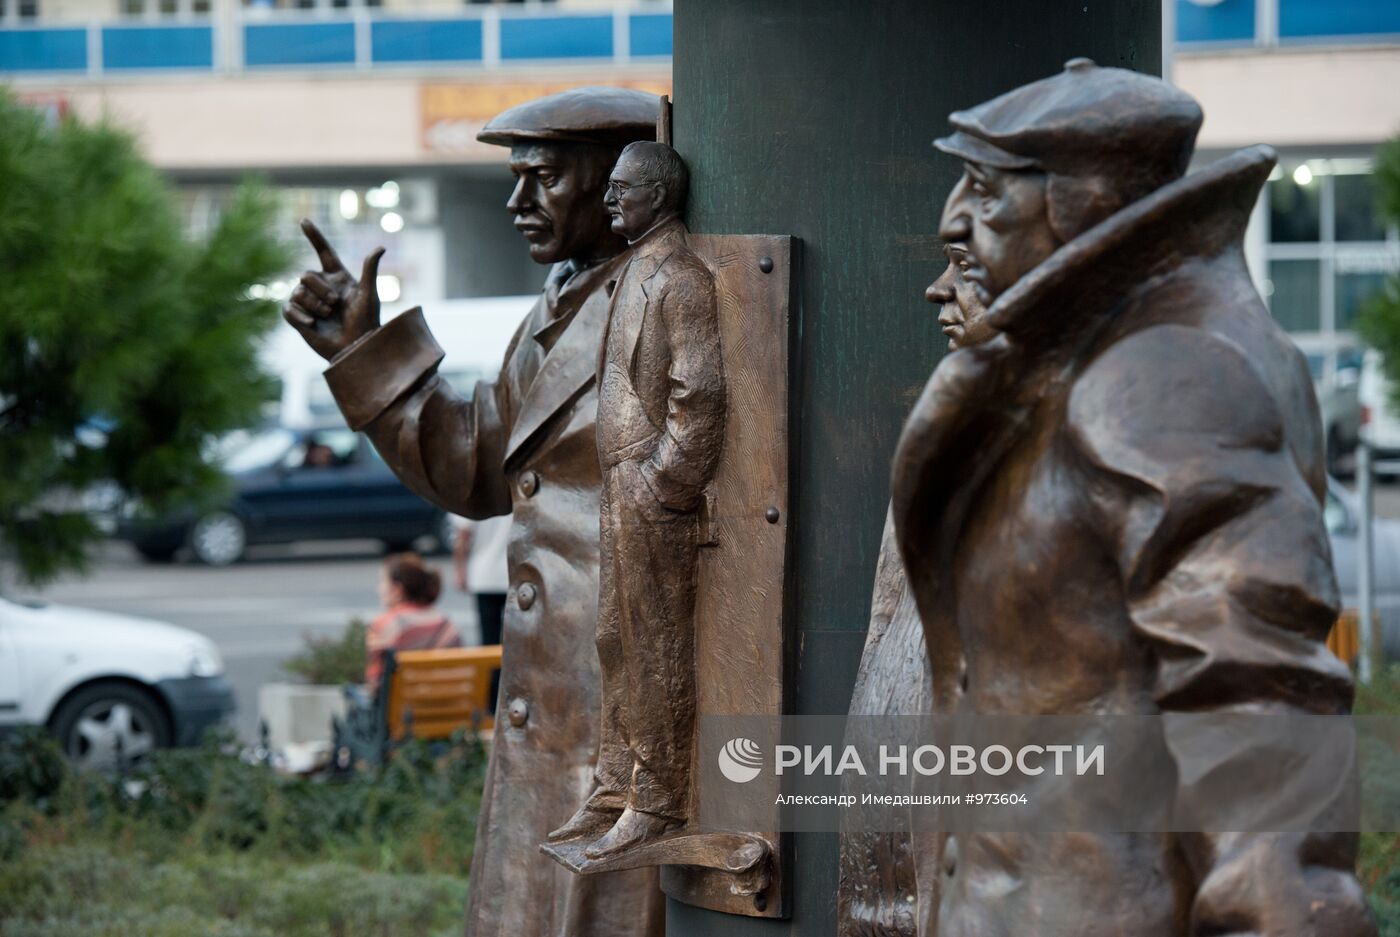 Памятник героям фильма "Мимино" в Тбилиси